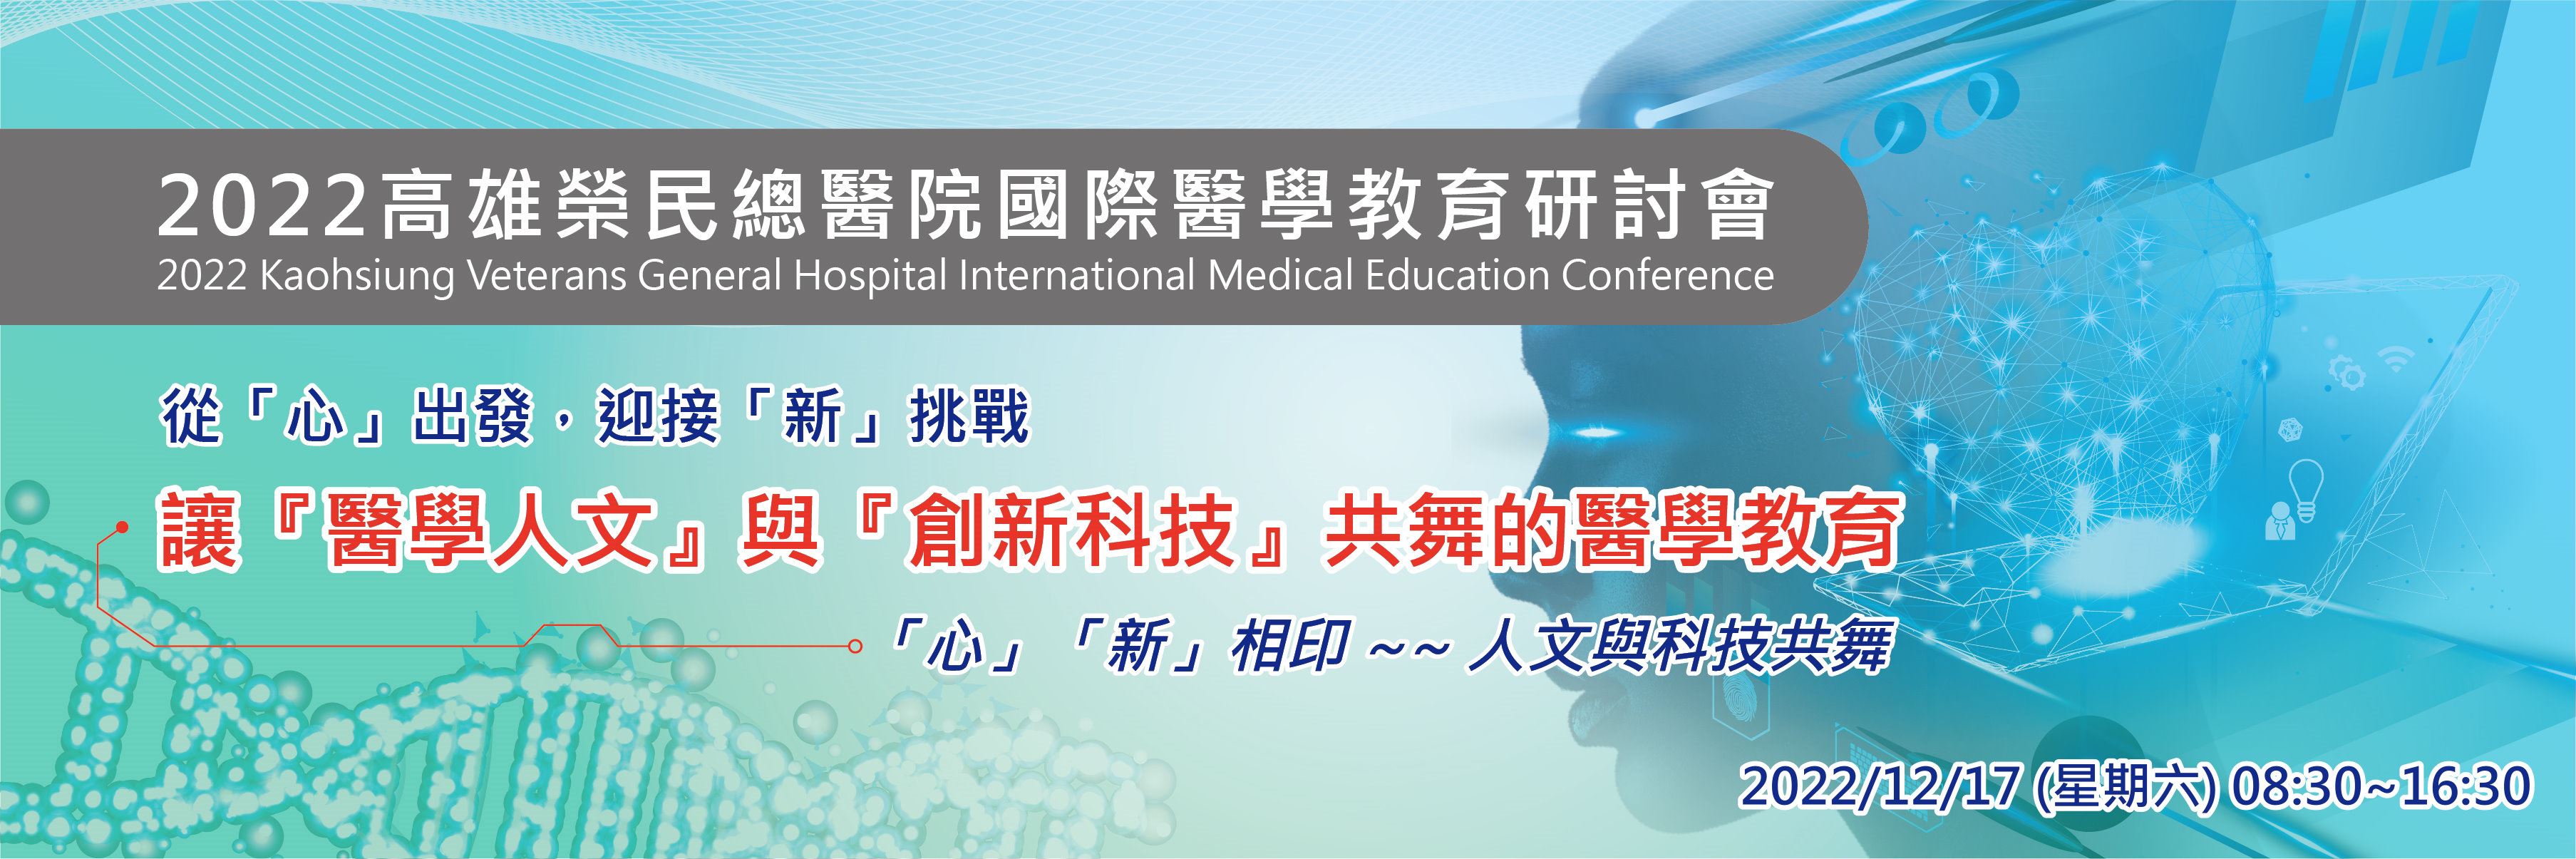 2022高榮國際醫學教育研討會(圖片)